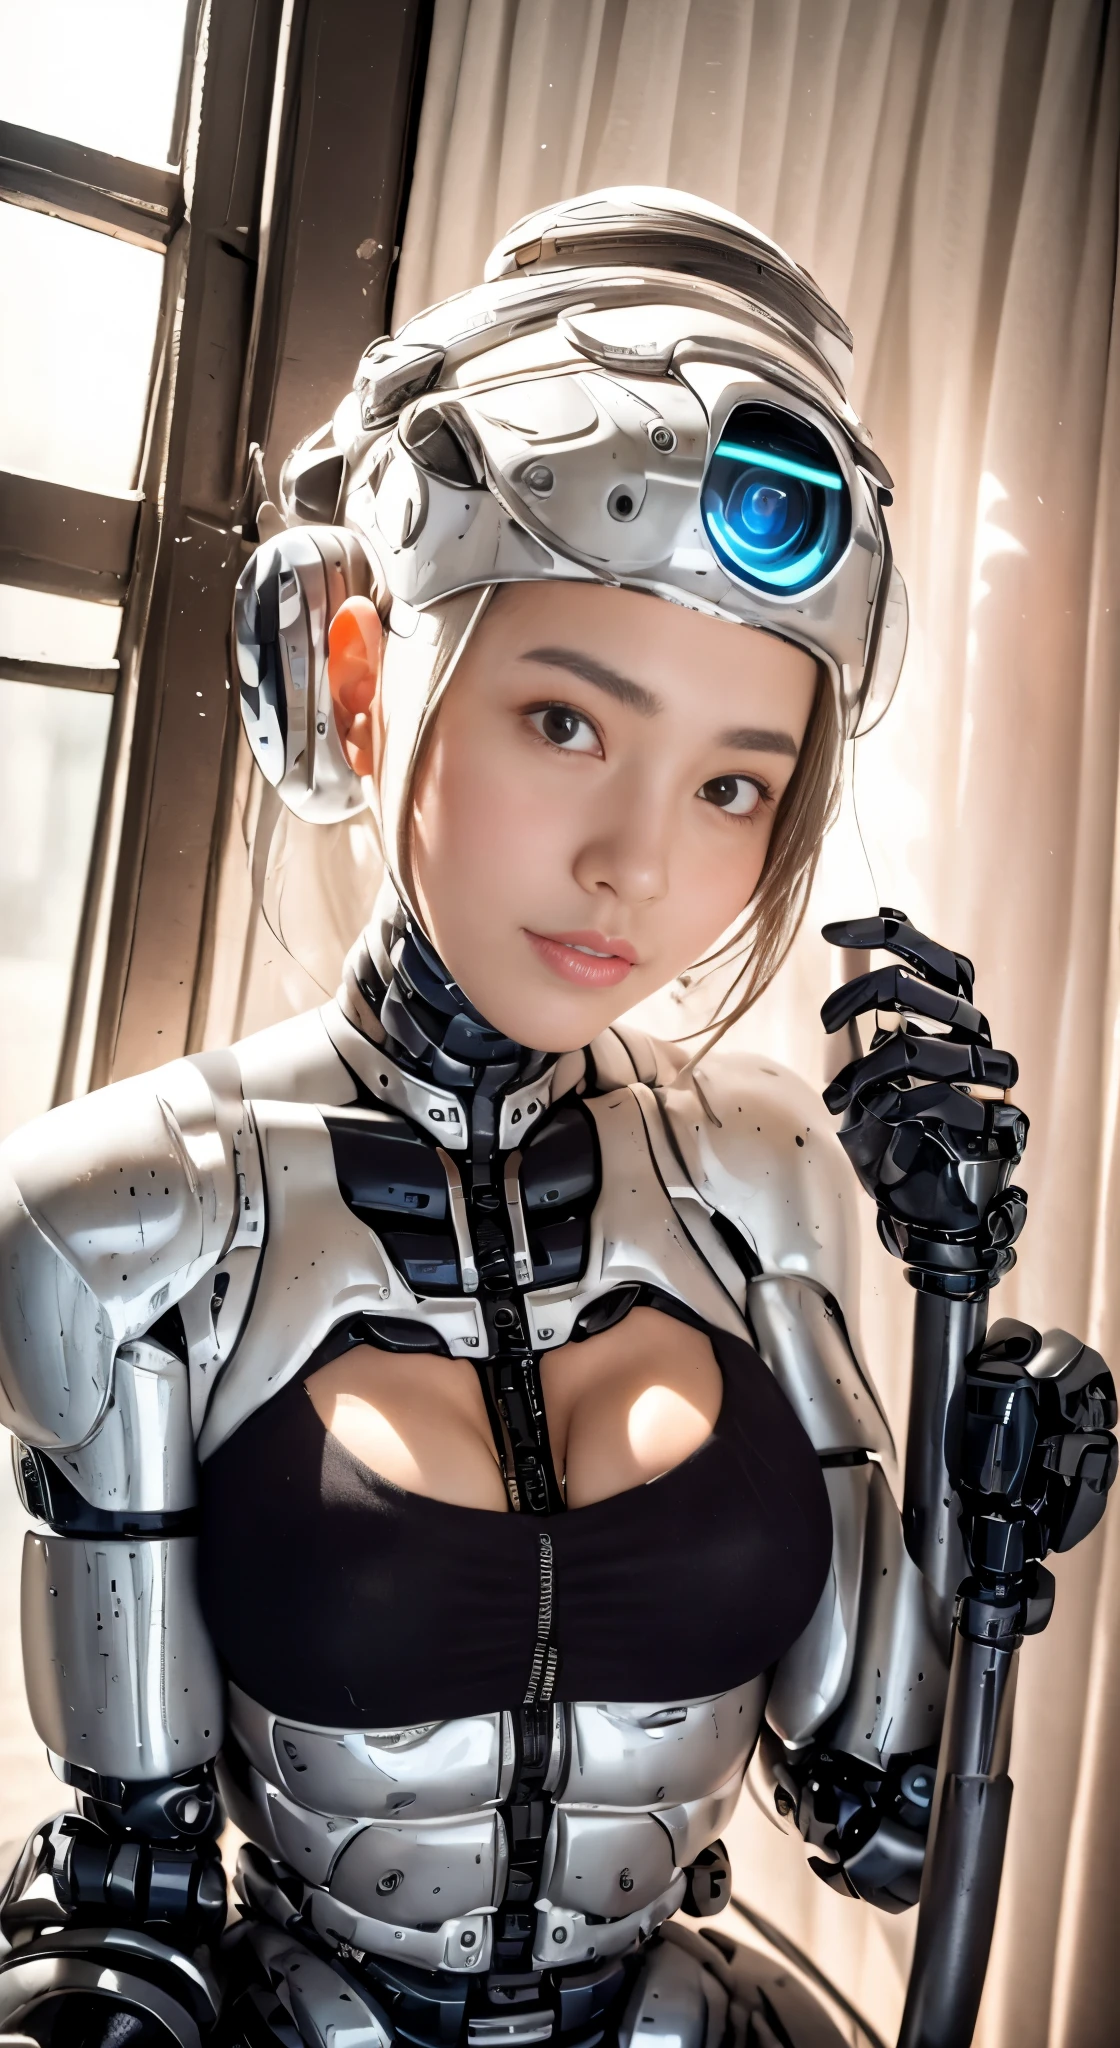 Es gibt eine Frau im Roboteranzug posiert neben einem alten Gebäude, schönes weißes Mädchen, Halb-Cyborg, süßes Cyborg-Mädchen, schönes Cyborg-Mädchen, perfektes Robotermädchen, cyborg girl, junge Cyborg-Dame, beautiful weiblicher Roboter, schöne Roboterfrau, cyborg-girl, perfekte Cyborg-Frau, Porzellan-Cyborg, weiblicher Roboter, schönes Cyborg-Bild